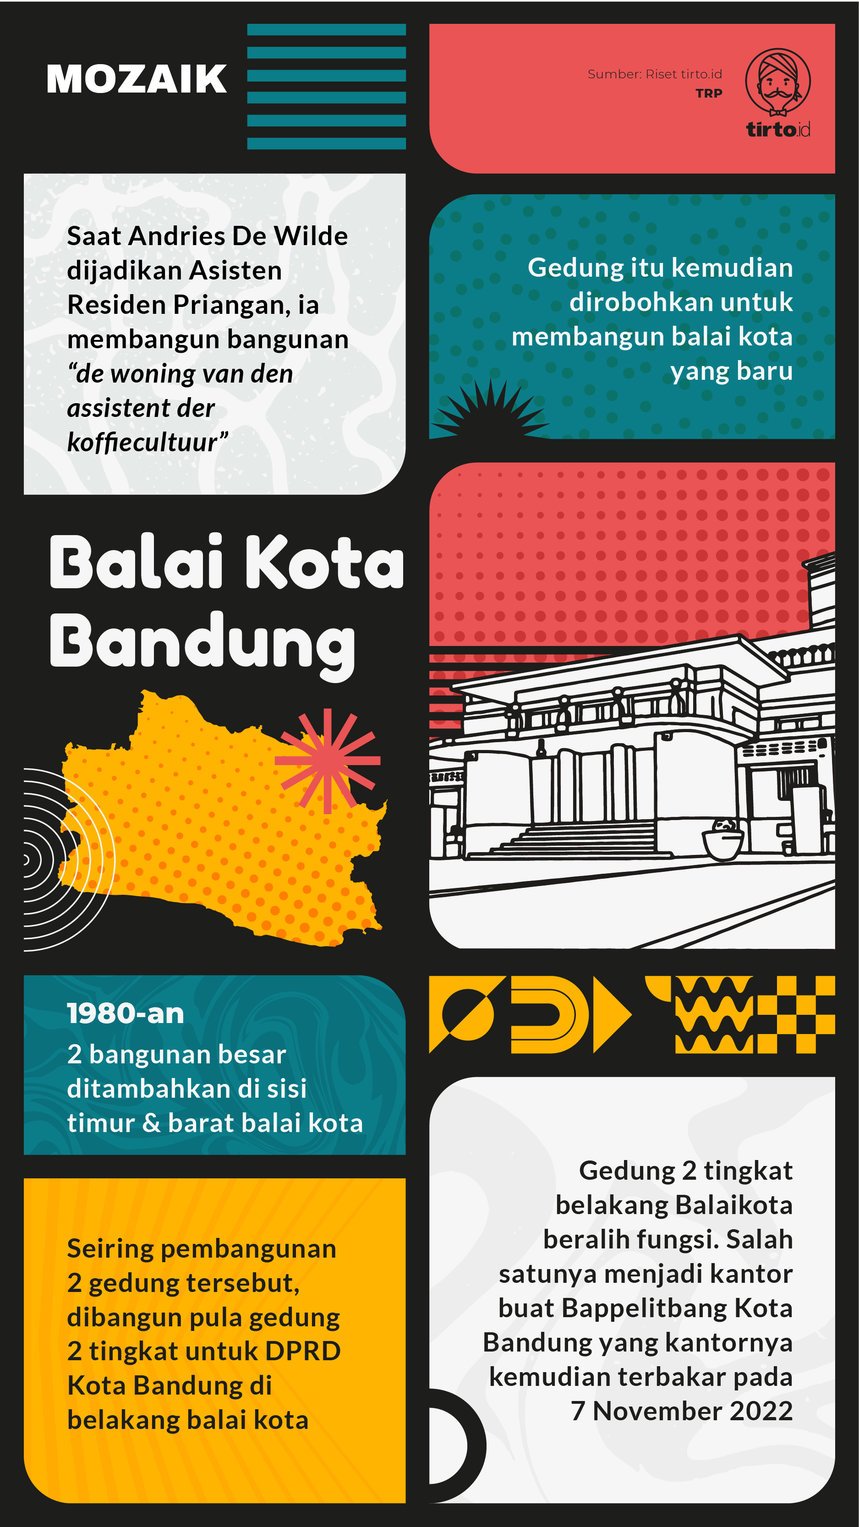 Infografik Mozaik Balai Kota Bandung